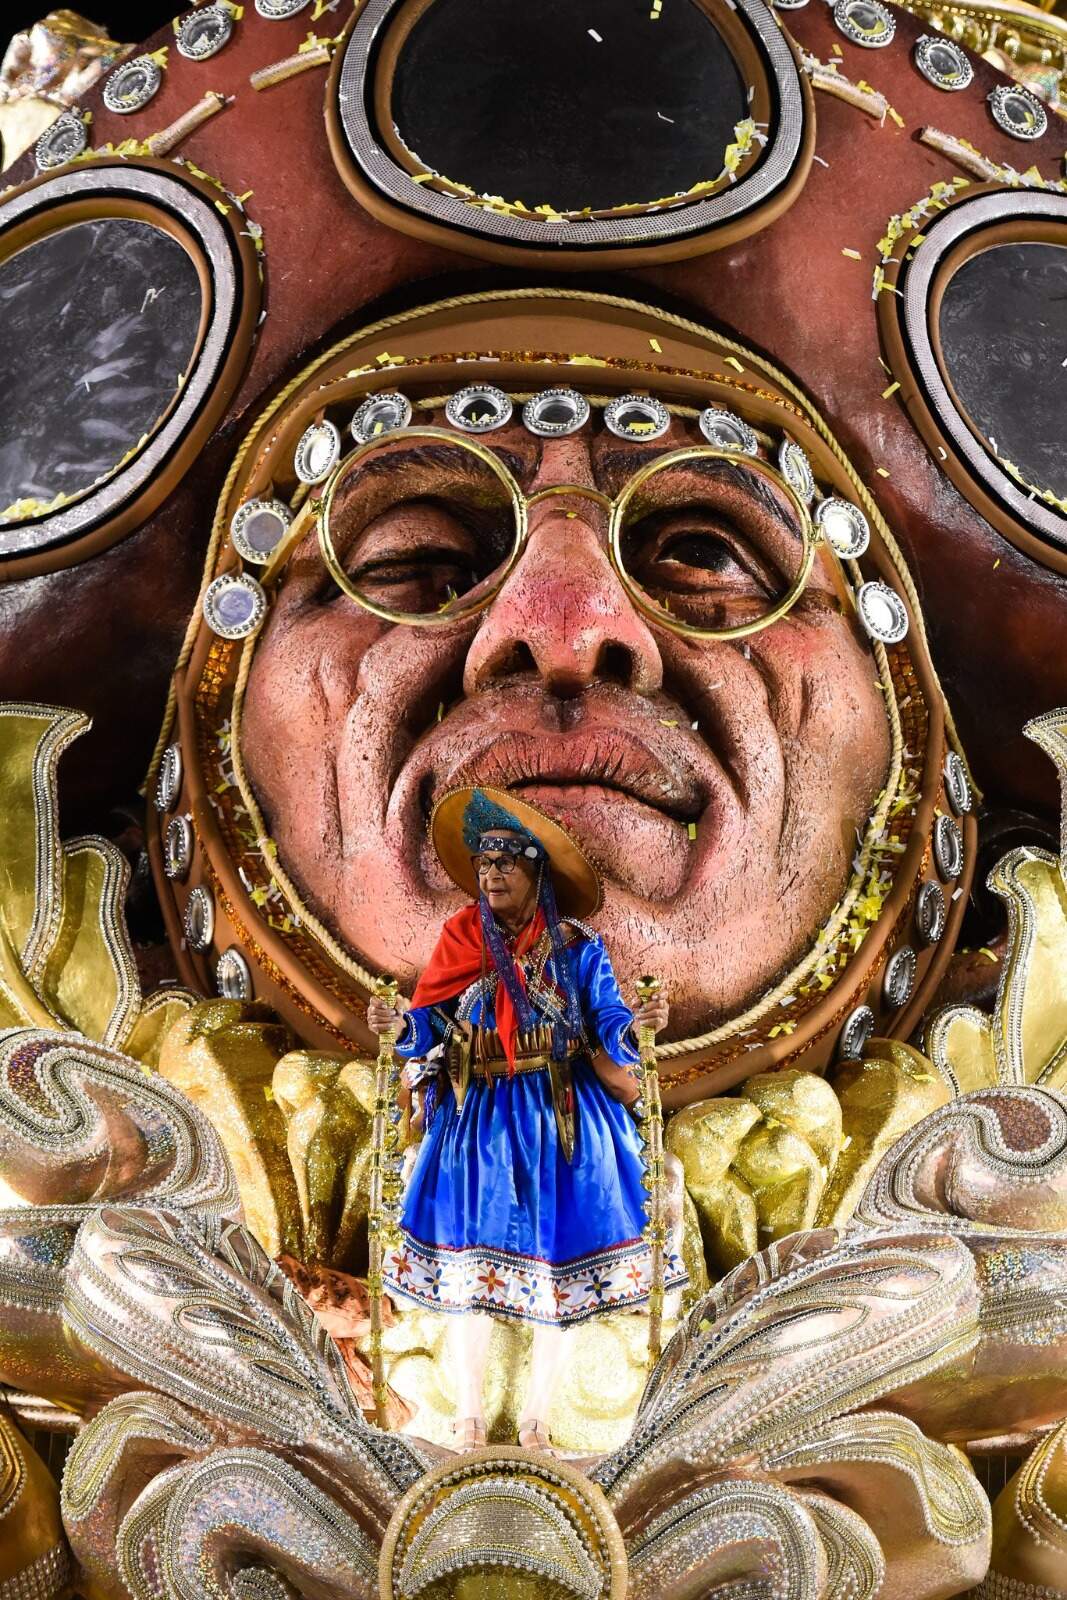 Com enredo sobre Lampião, Imperatriz é campeã do Carnaval do Rio após 22 anos